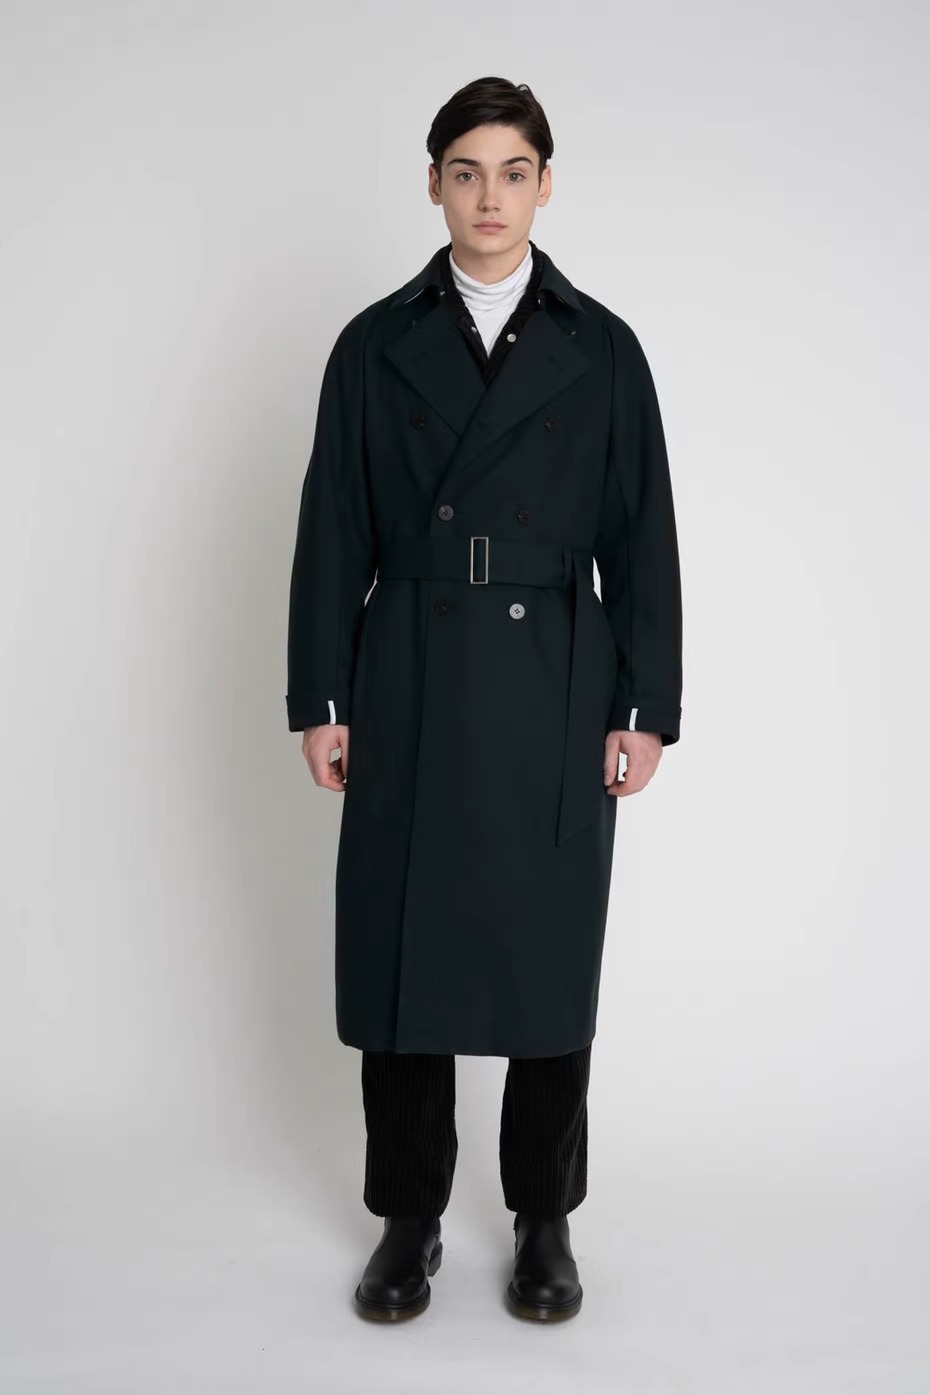 オーバーコートのラグランスリーブオーバーコートを着た男性モデル